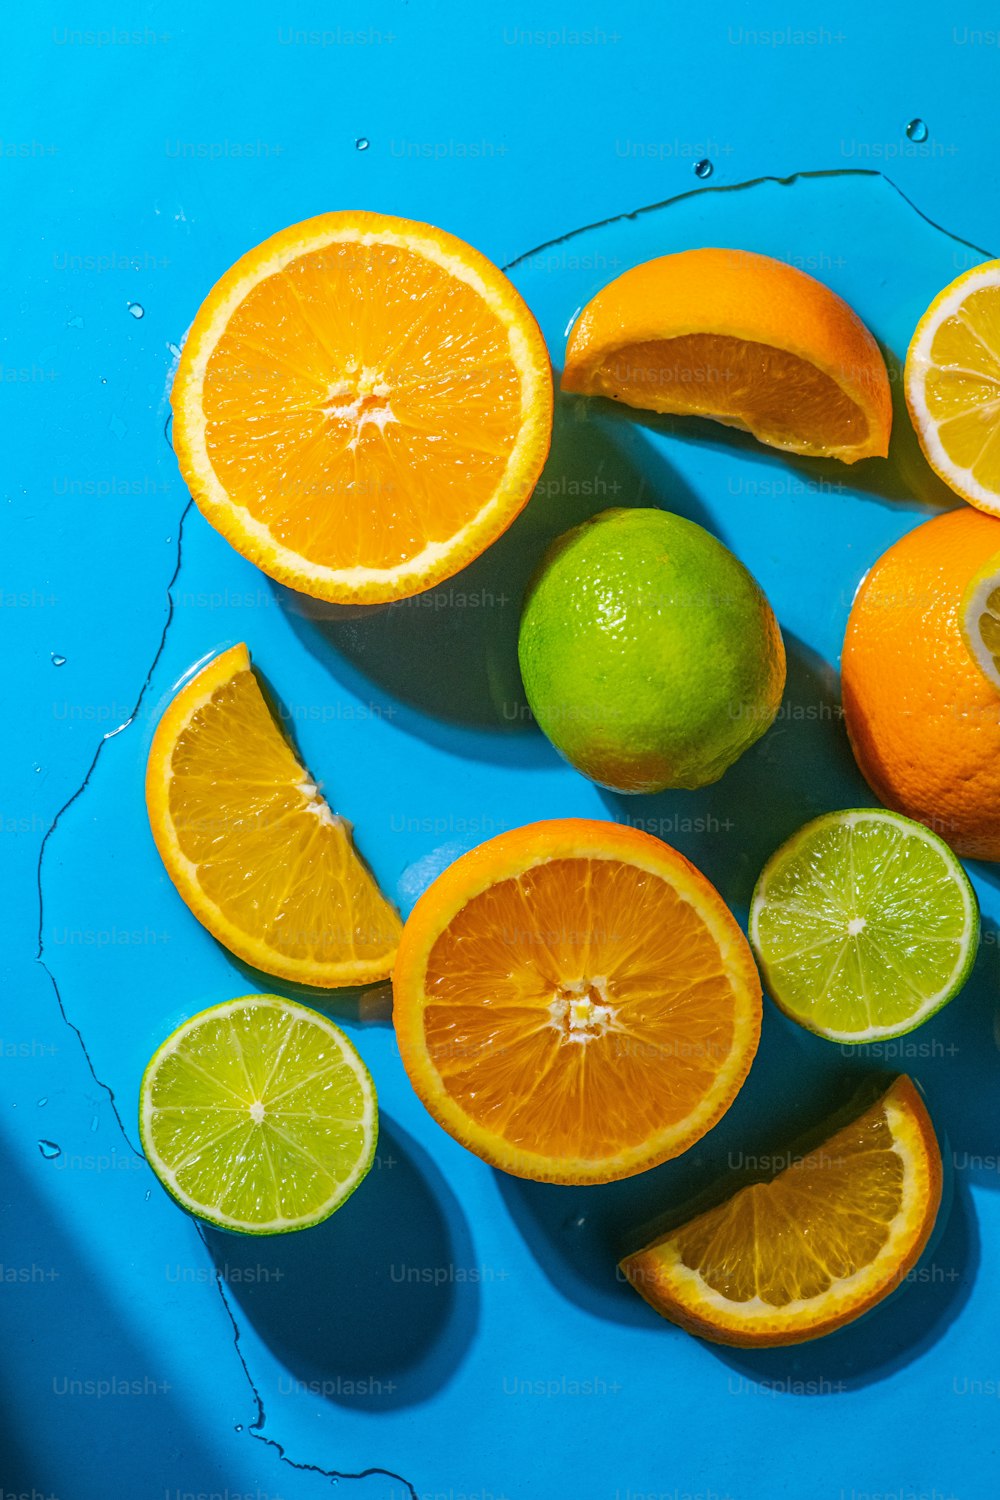 Un grupo de naranjas y limas sobre una superficie azul